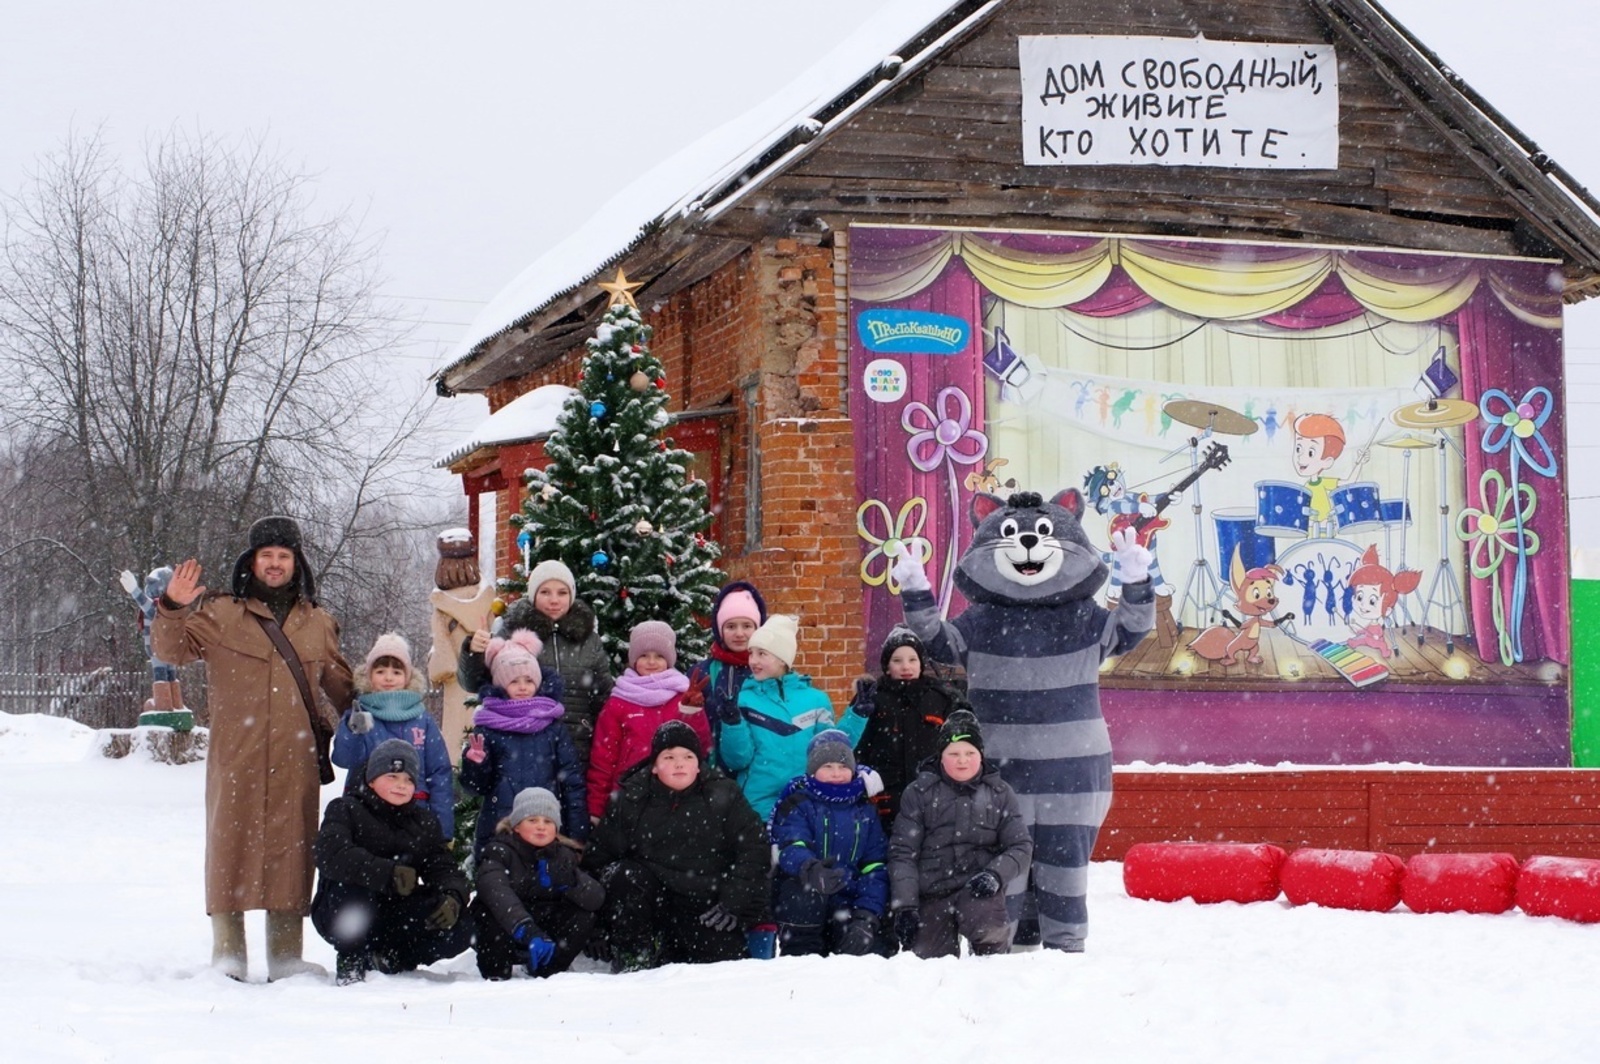 В России энтузиасты сделали деревню Простоквашино центром притяжения туристов со всей страны